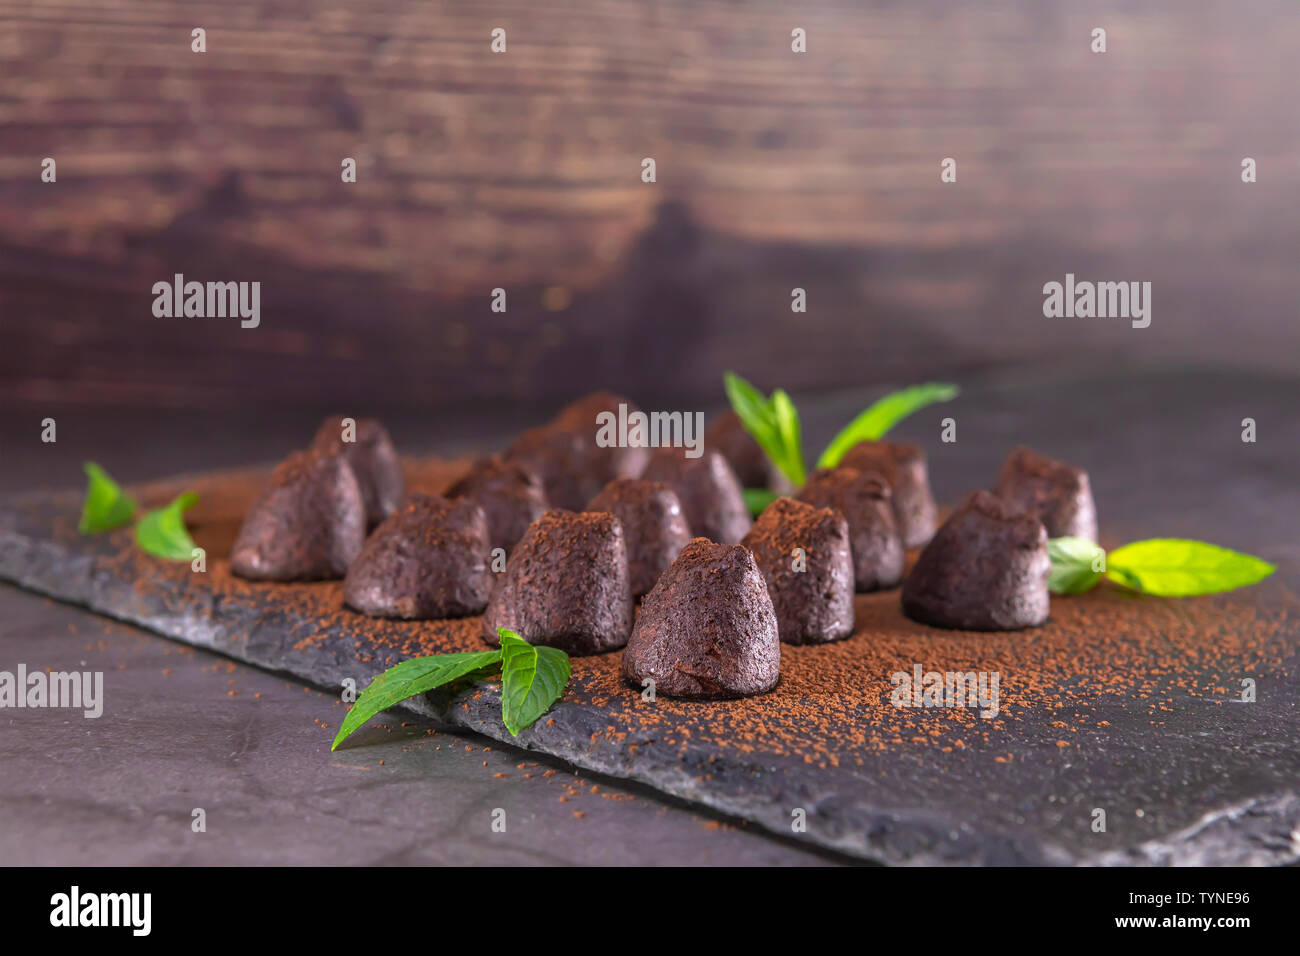 Hausgemachte Schokolade Trüffel mit Minze bestreut mit Kakaopulver auf Schiefer. Fokus auf erste Trüffel. Stockfoto